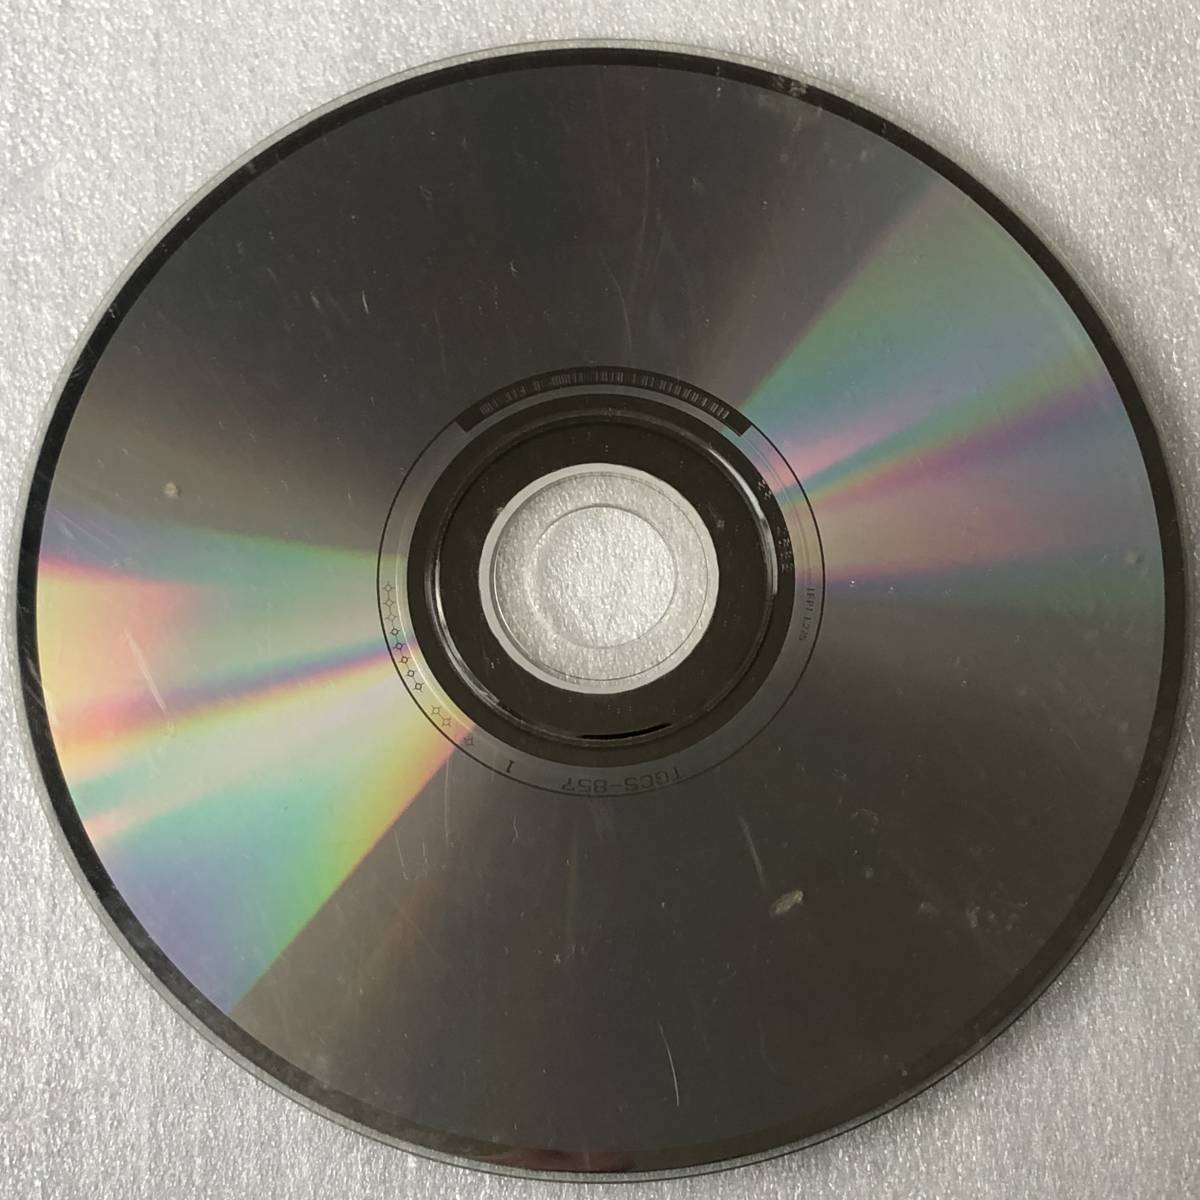 特価CD 管理番号0502_このような傷だらけの品は除外しています。